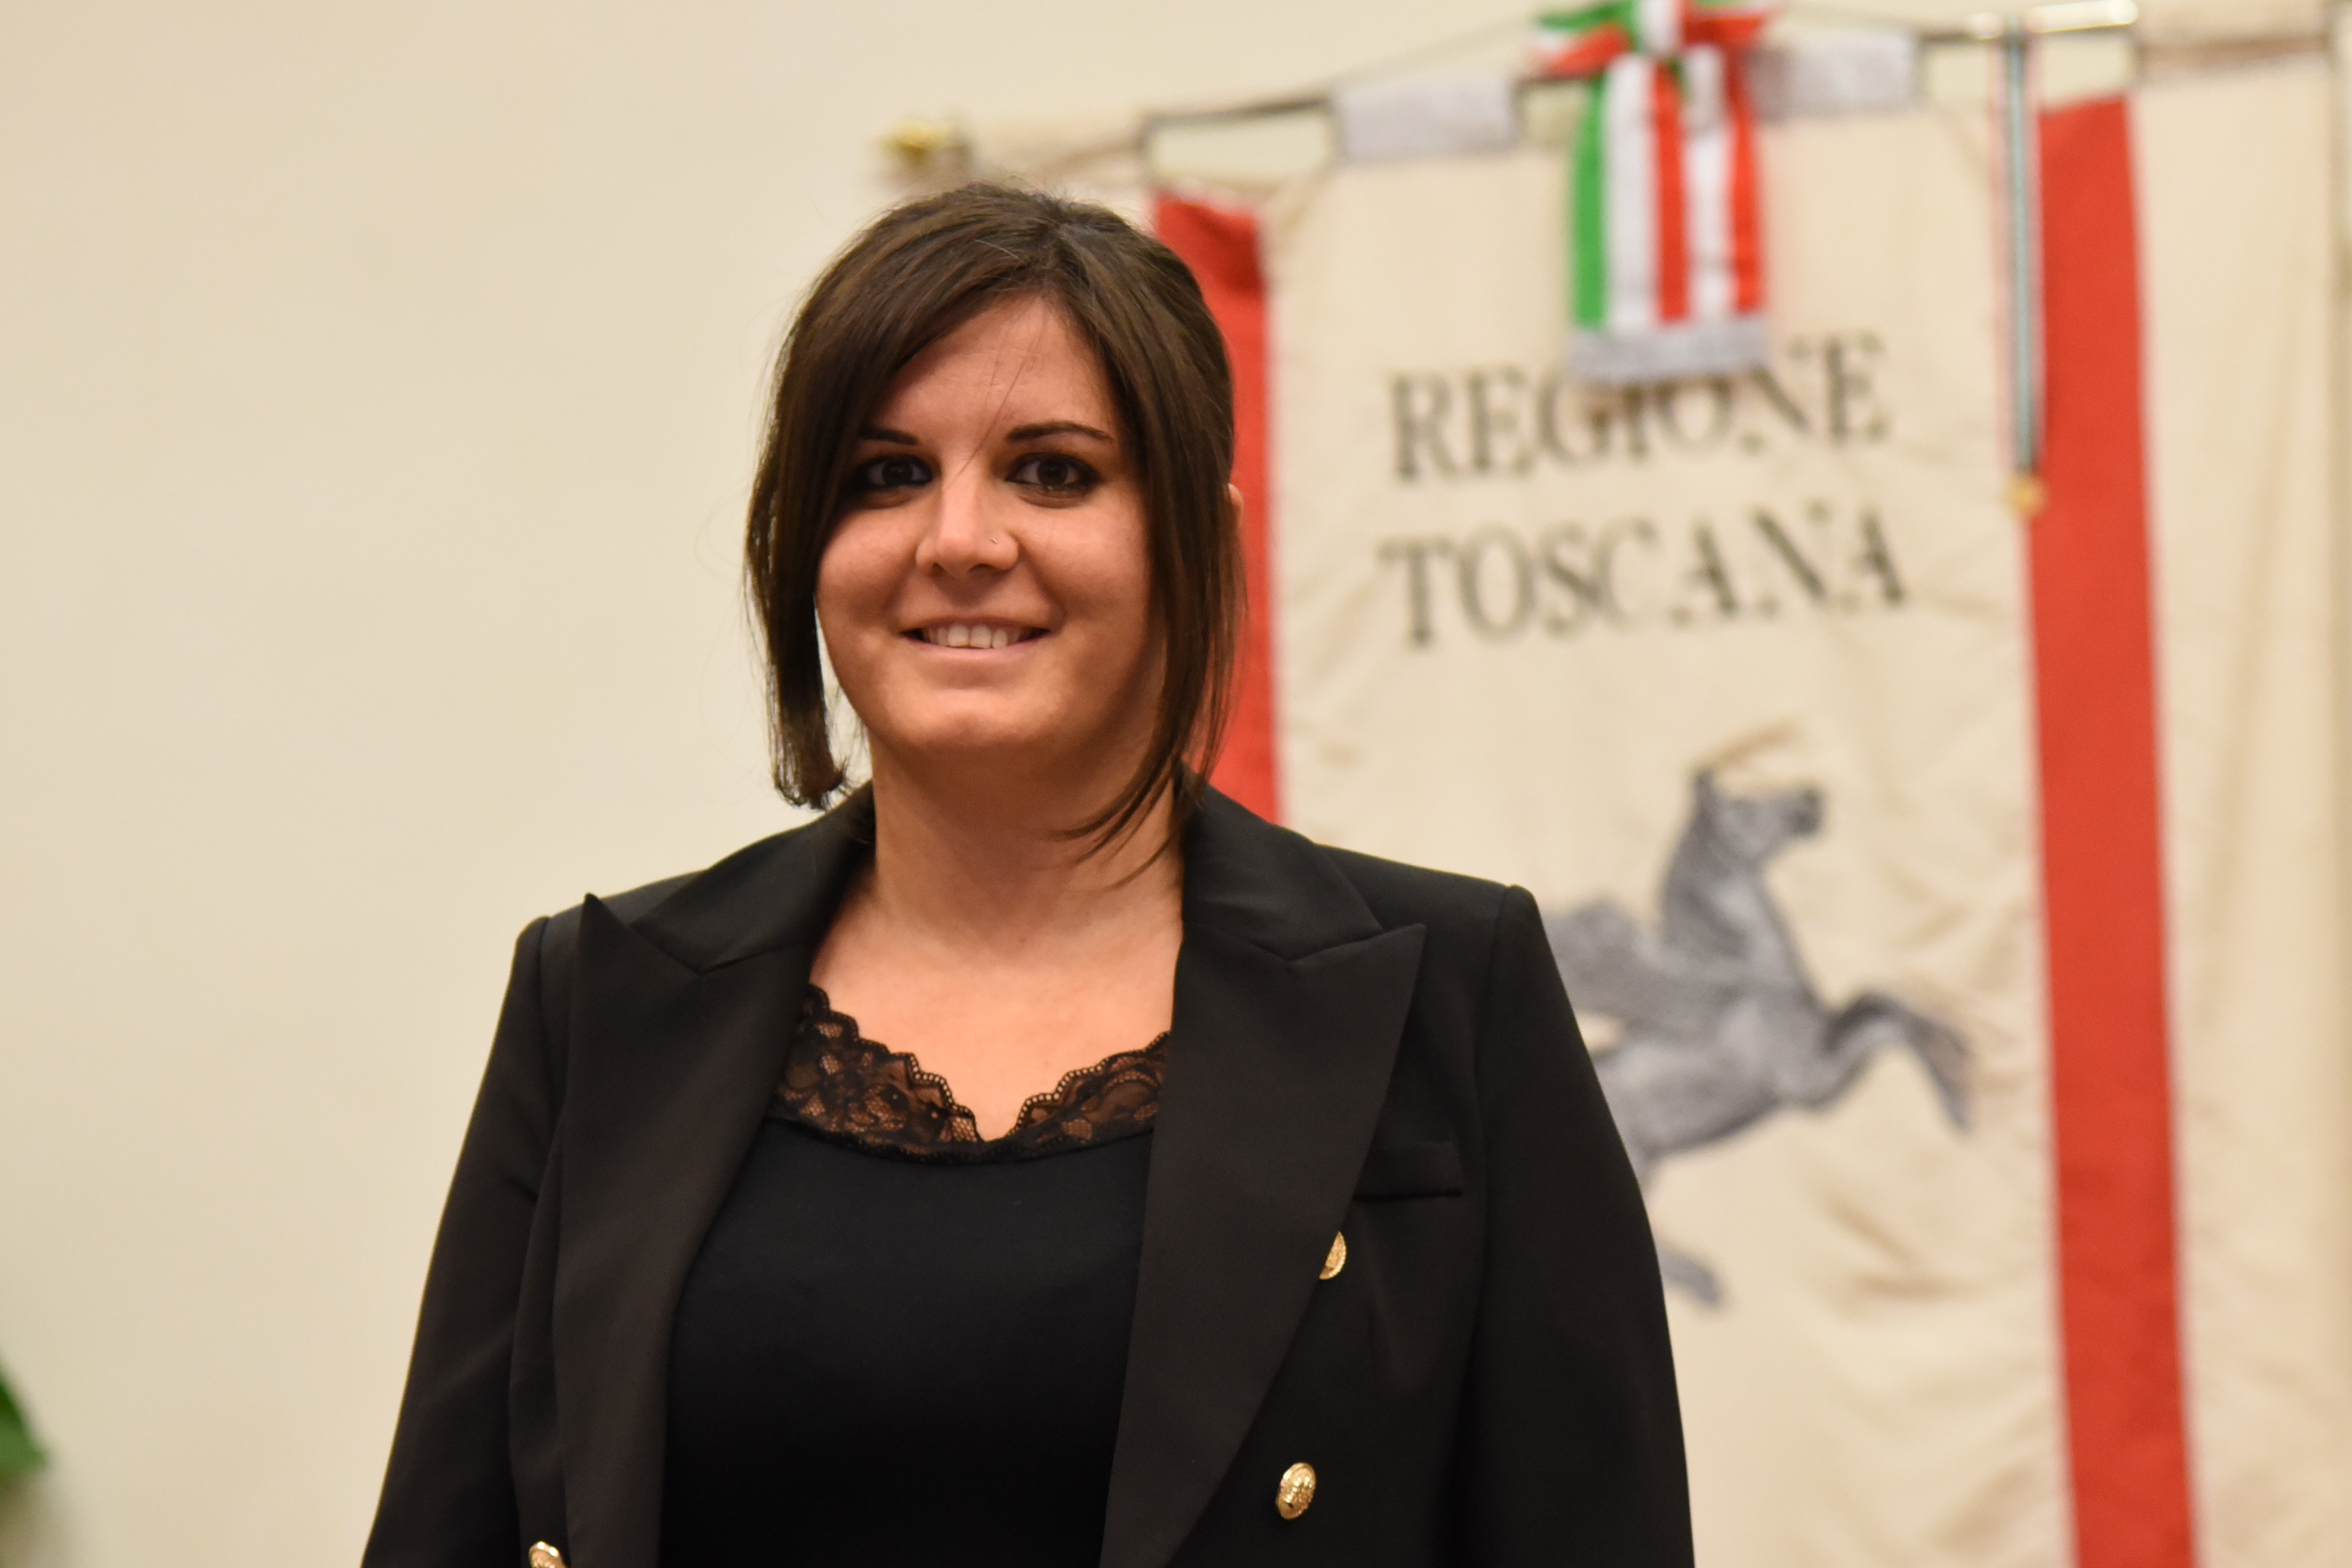 L'assessore al lavoro Alessandra Nardini (Fonte foto Regione Toscana)